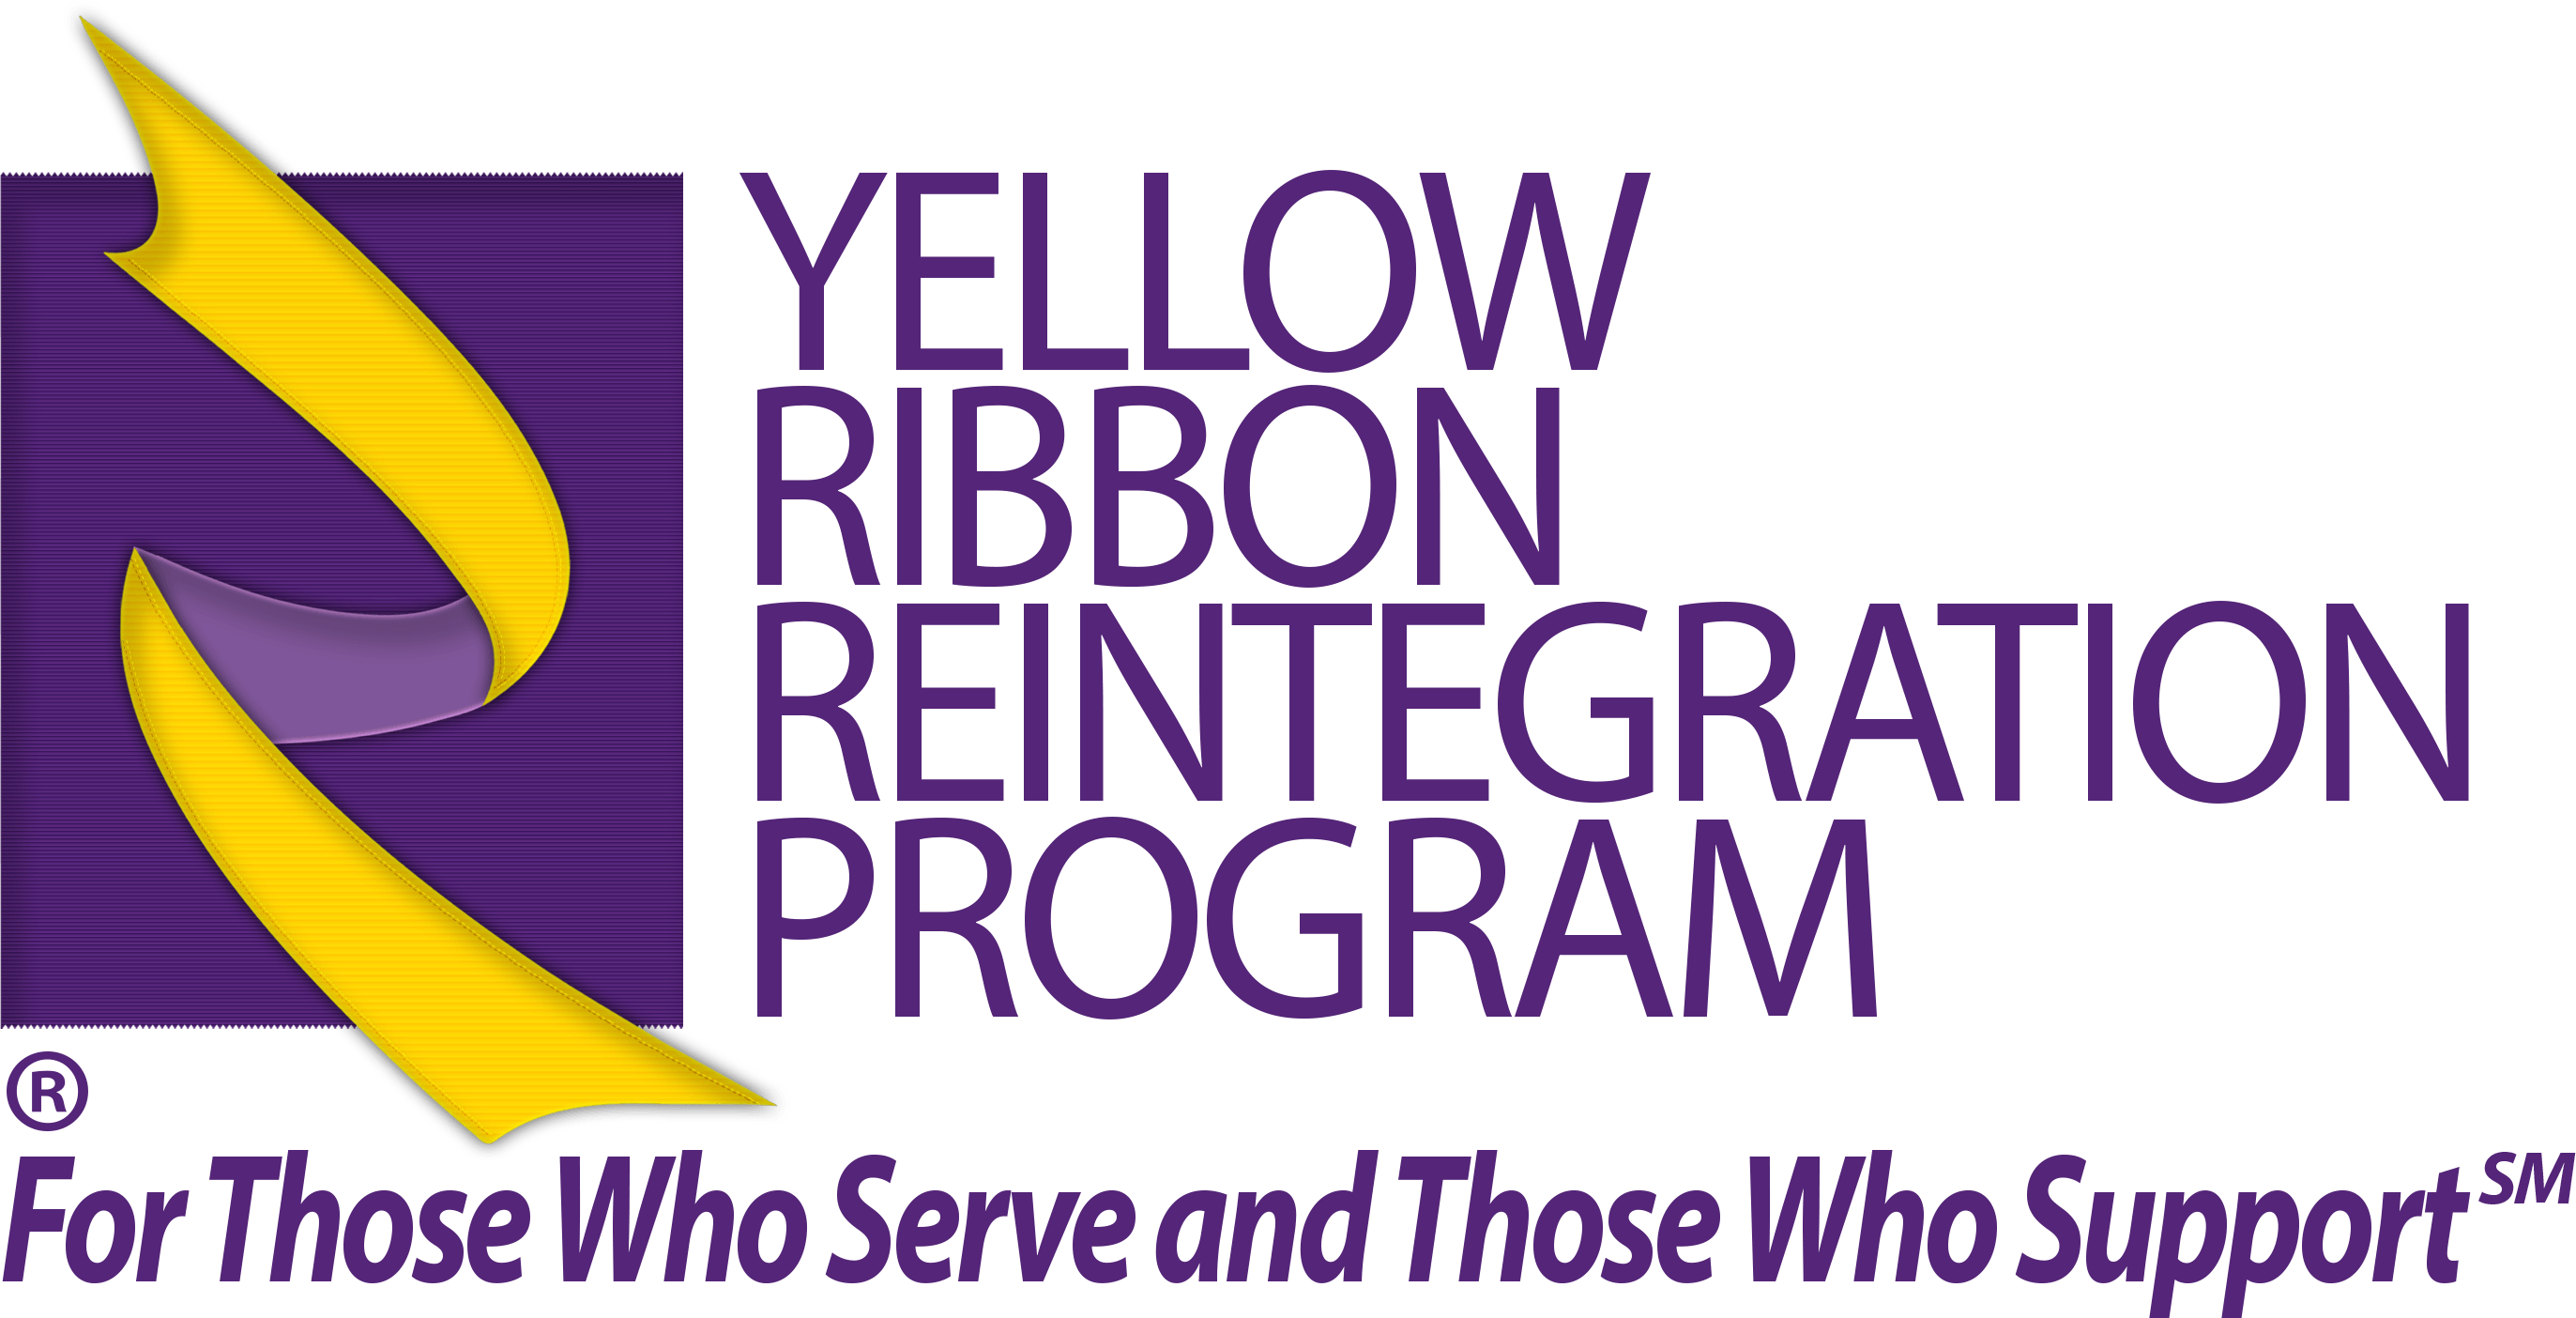 Yellow Ribbon Logo - File:Yellow Ribbon Reintegration Program Logo with Tagline.png ...